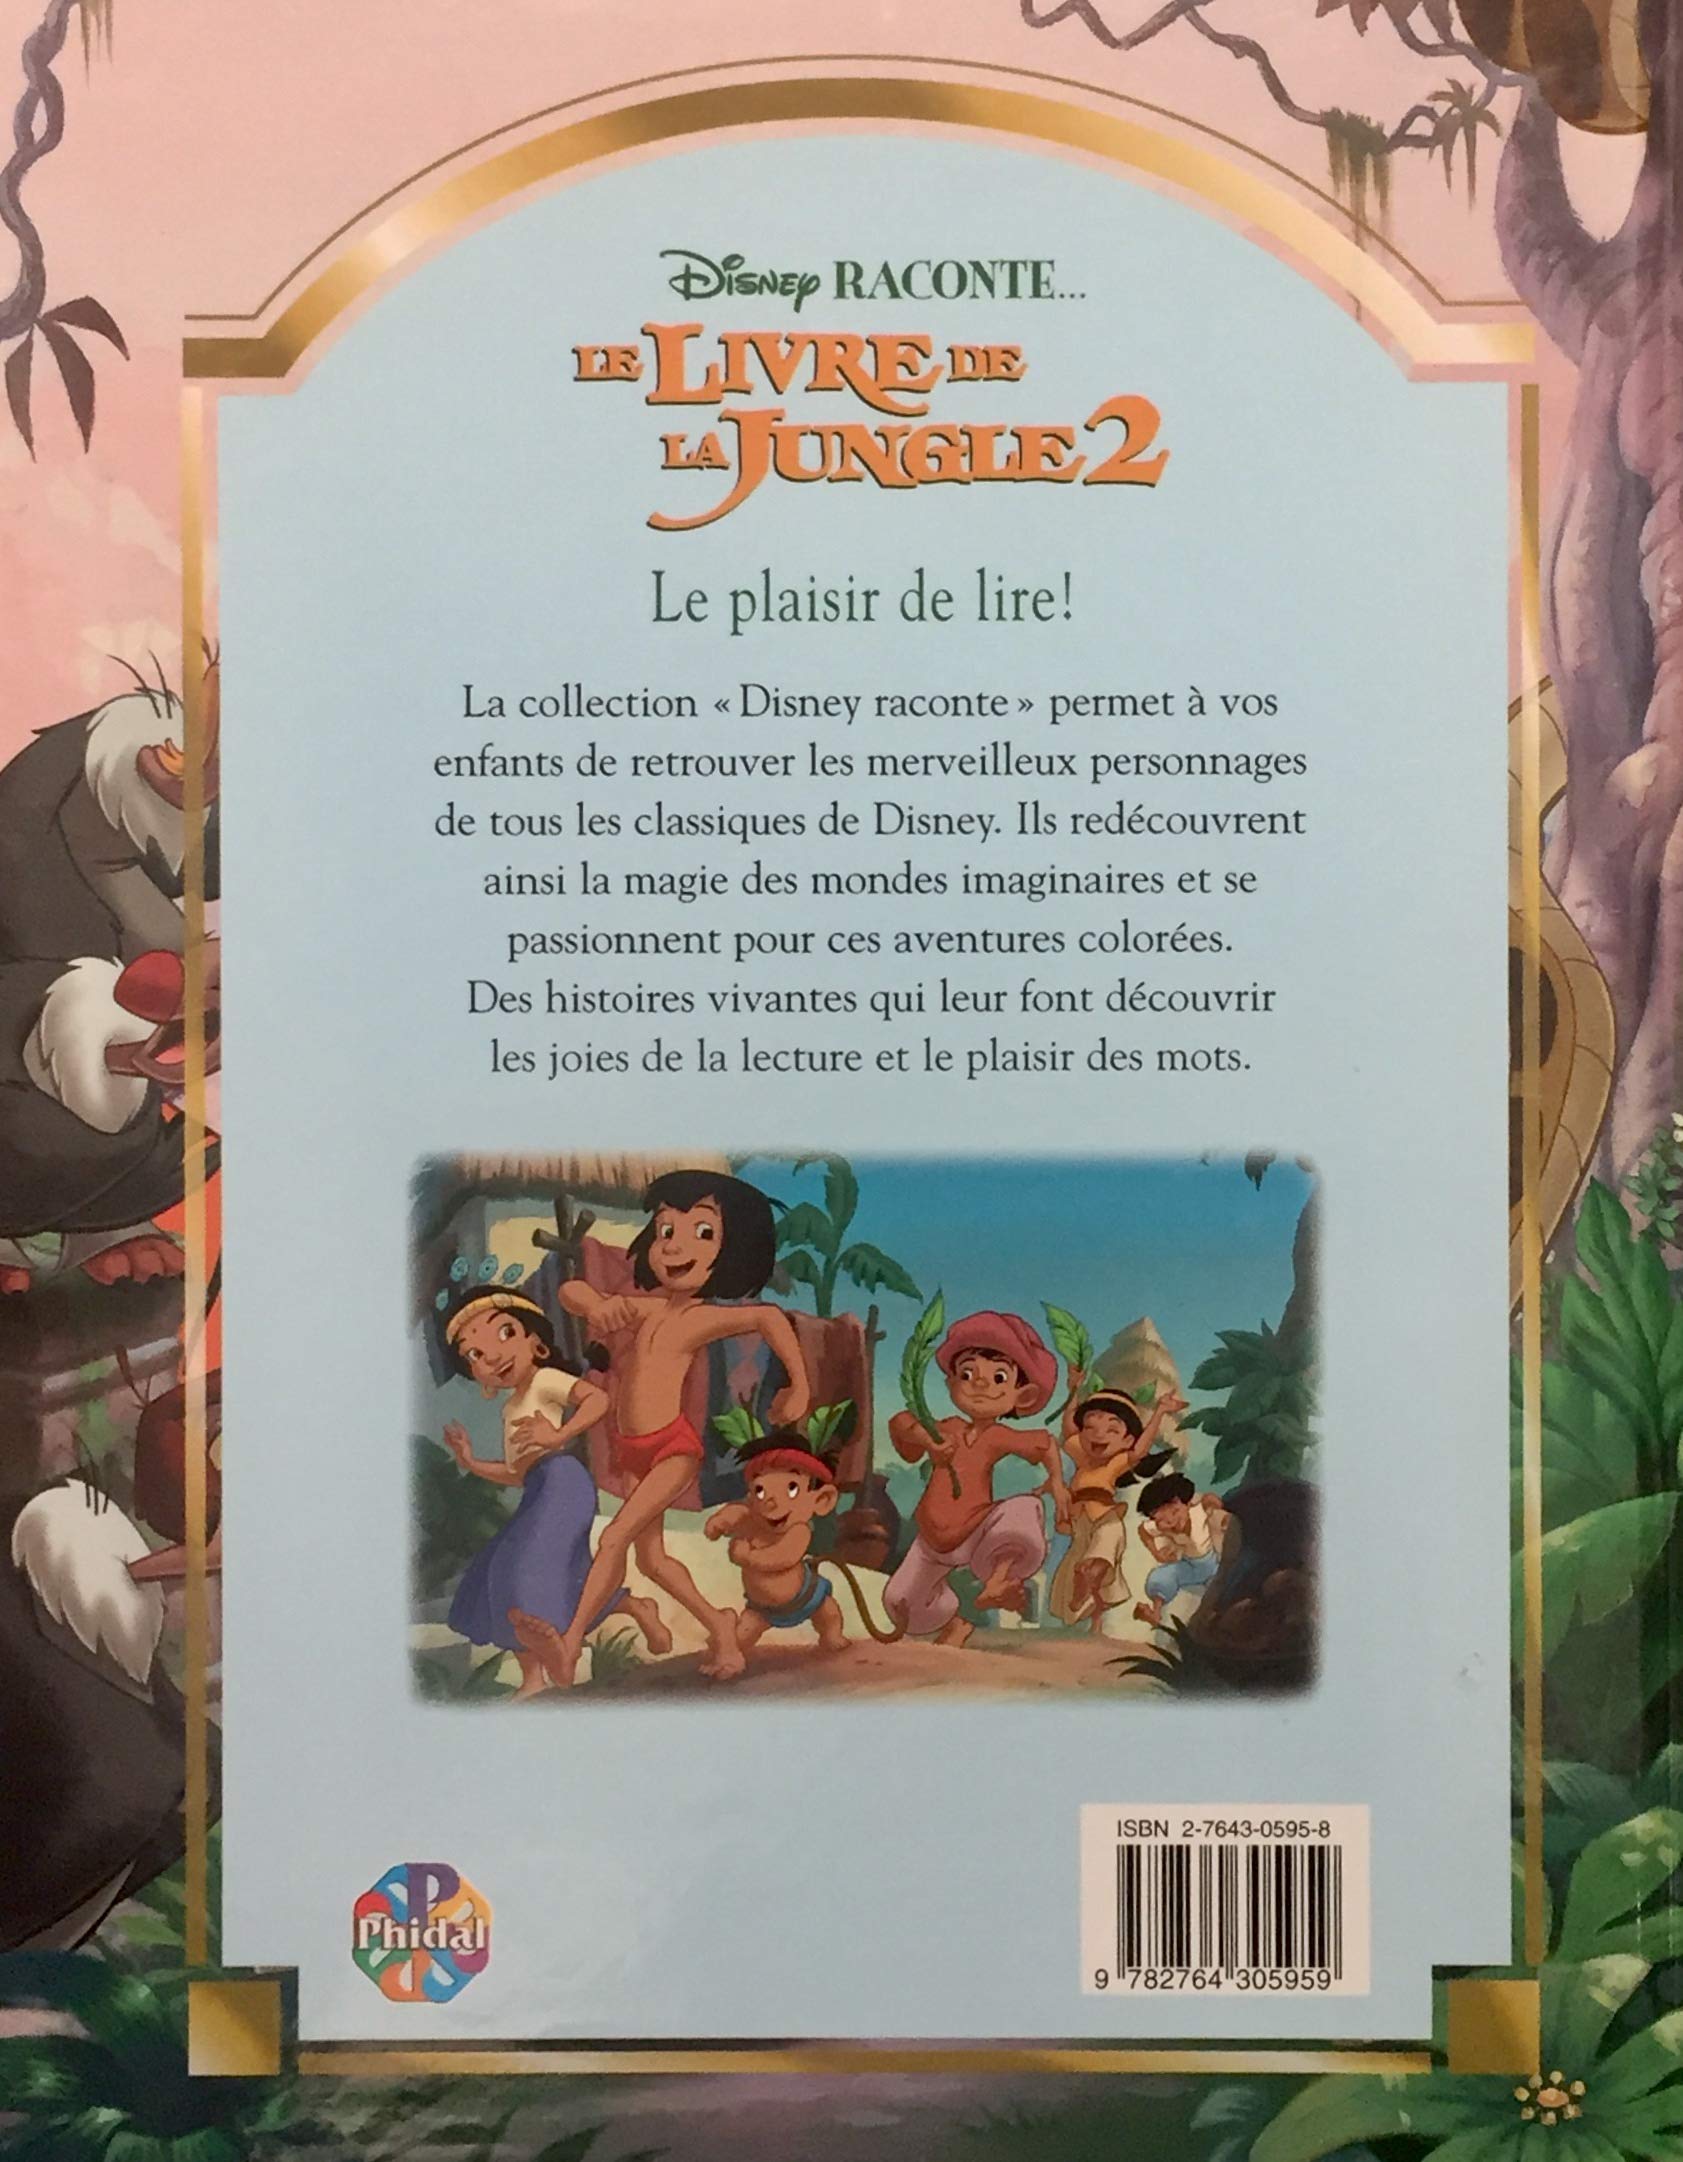 Le livre de la jungle 2 (Disney)